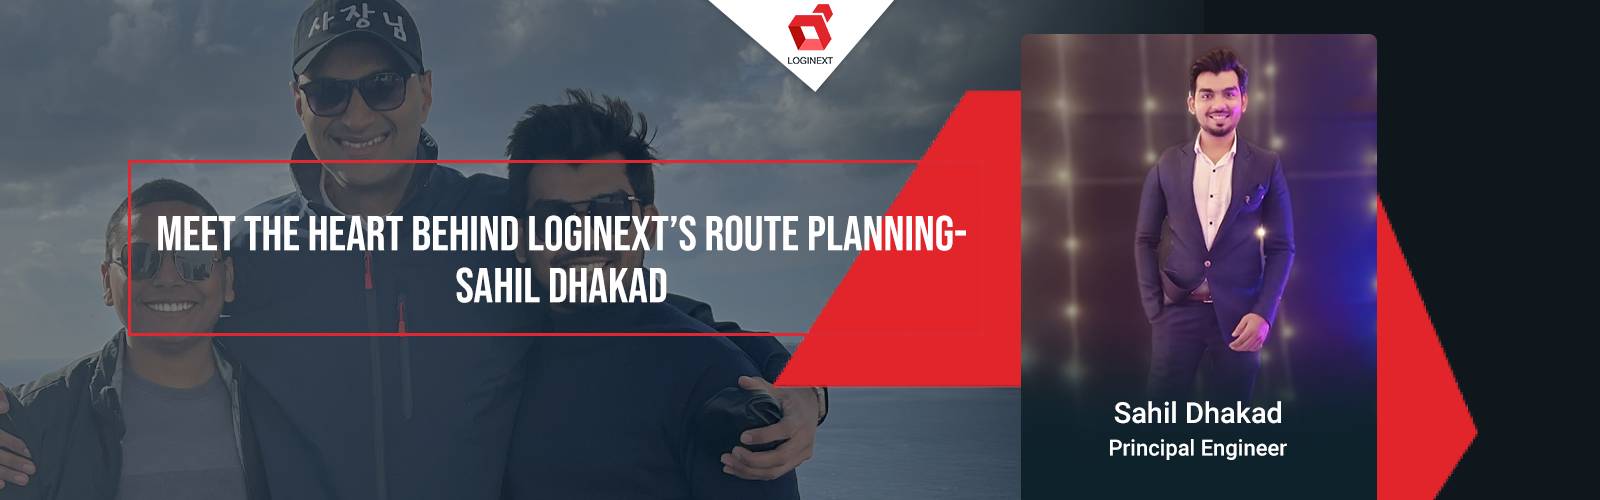 Le cœur derrière la planification d'itinéraire de LogiNext - Sahil Dhakad sur WeAreLogiNext